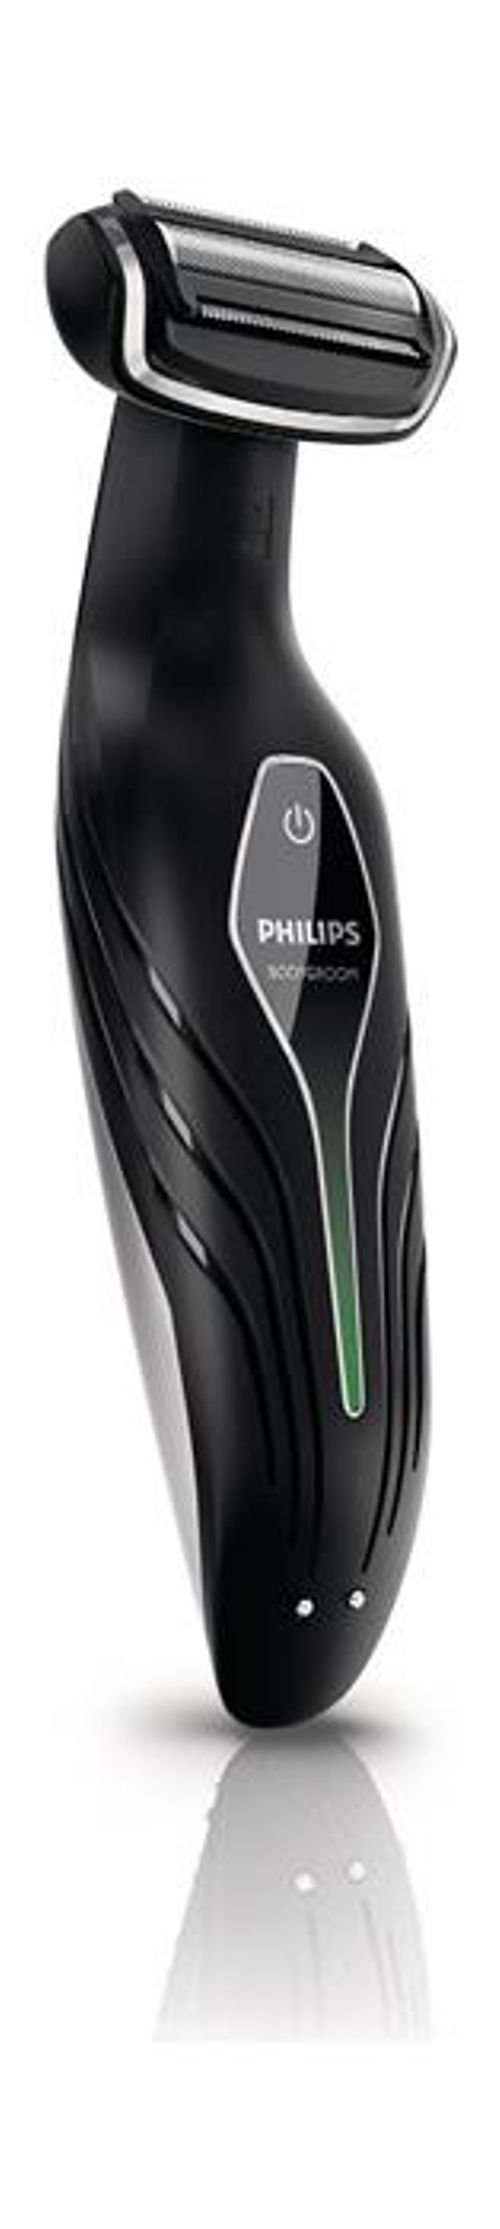 Philips Wet/Dry Body Groomer Trimmer - model BG2036/33/32